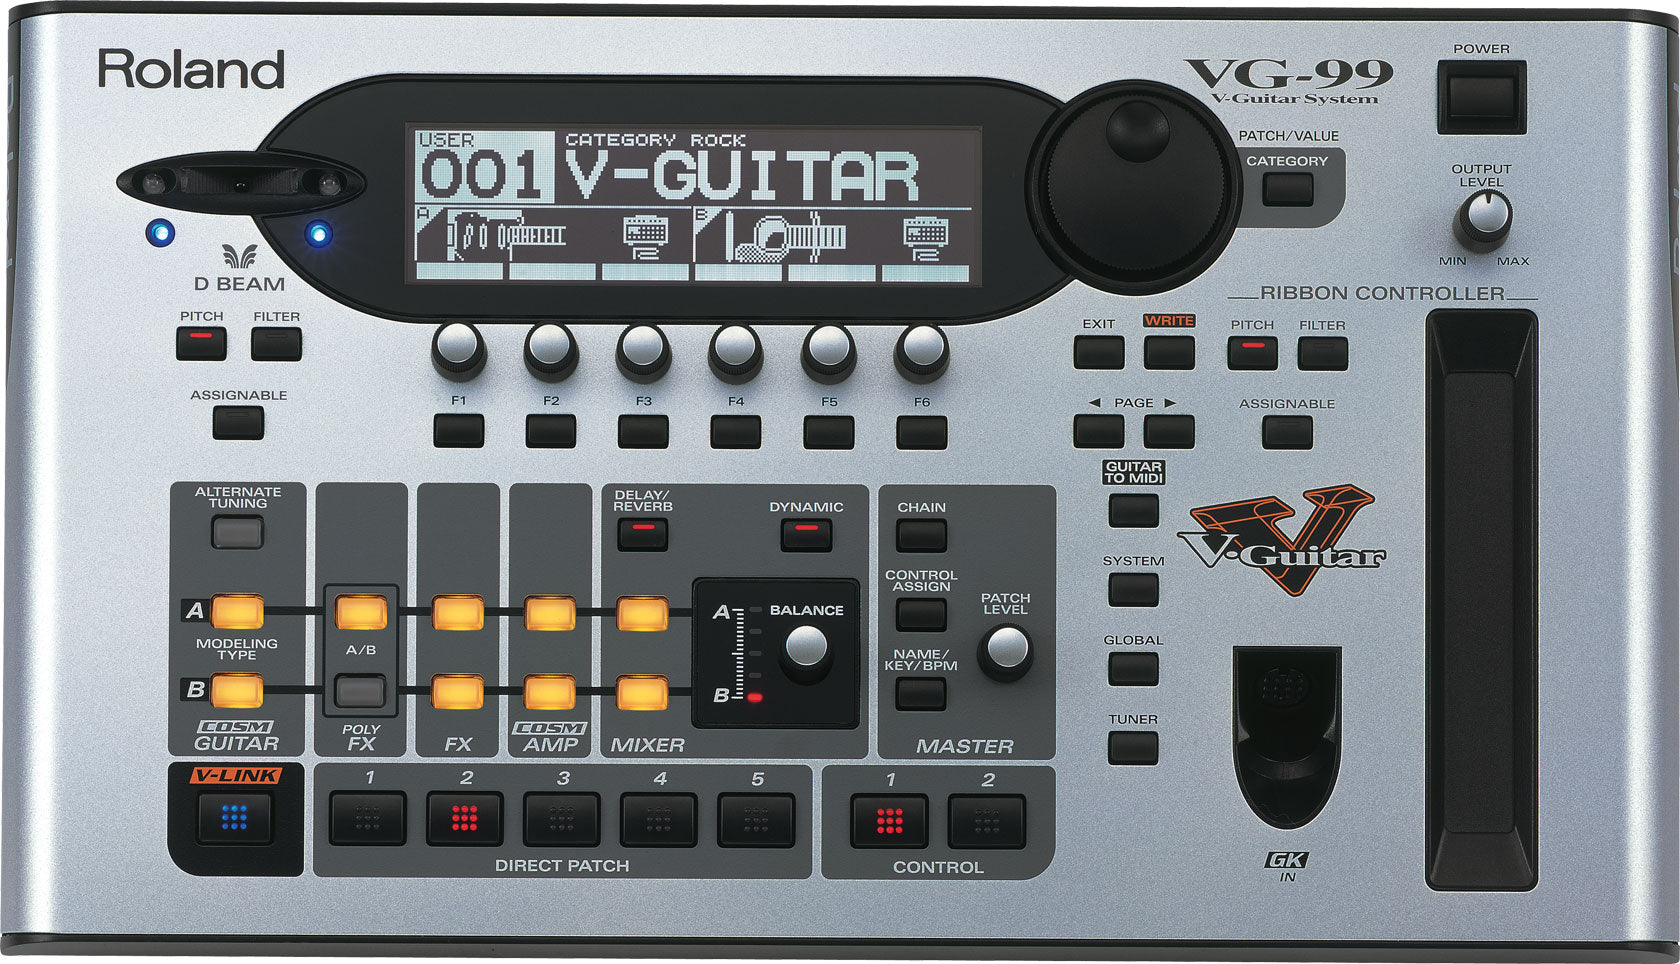 Roland VG-99 V-Guitar System 結他效果器